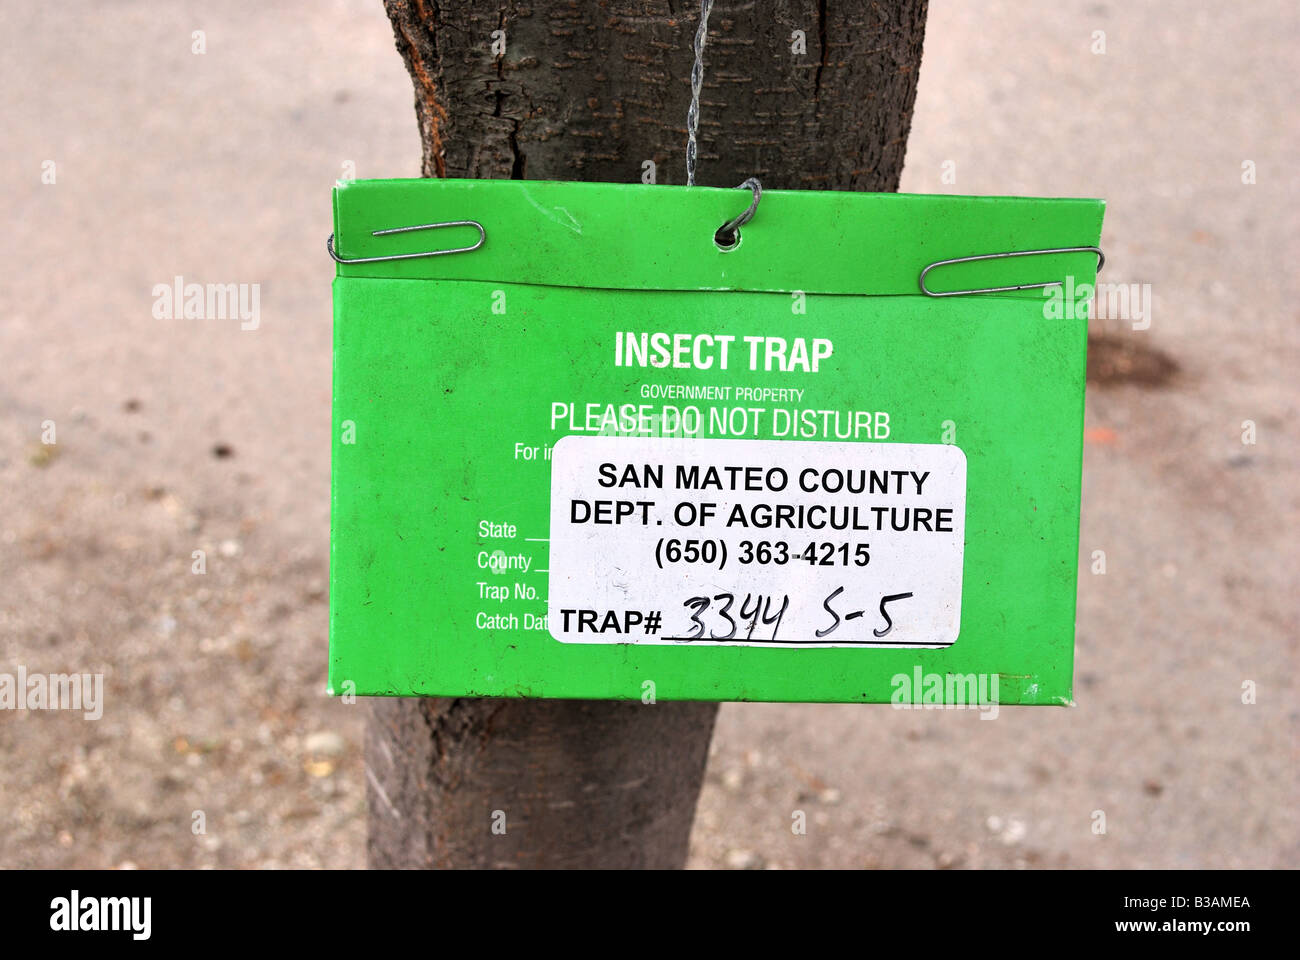 County Dipartimento Agricoltura utilizza le trappole per insetti per monitorare le invasioni di insetti Foto Stock